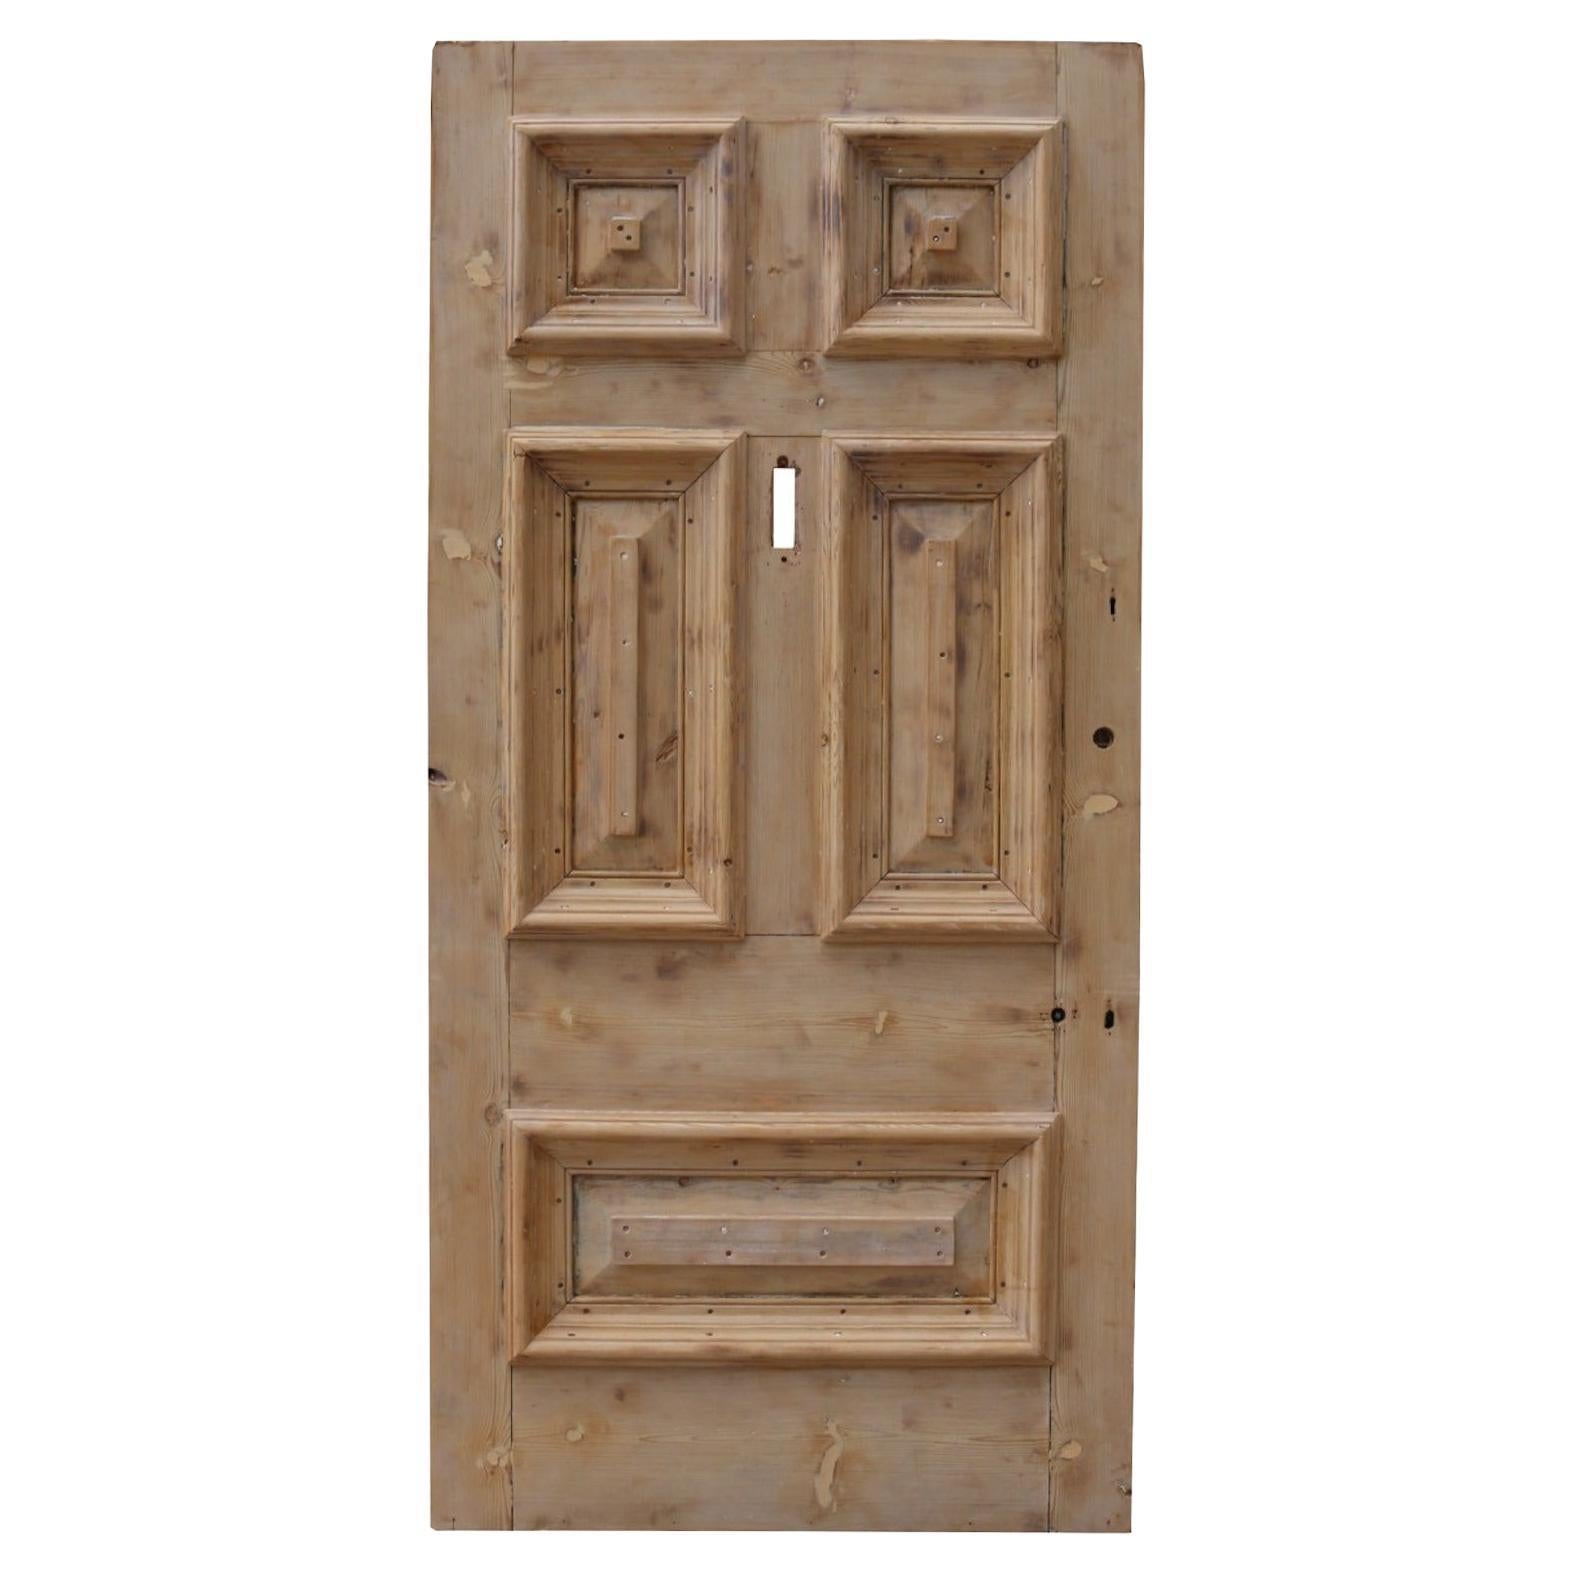 Reclaimed Pine Exterior Door For Sale